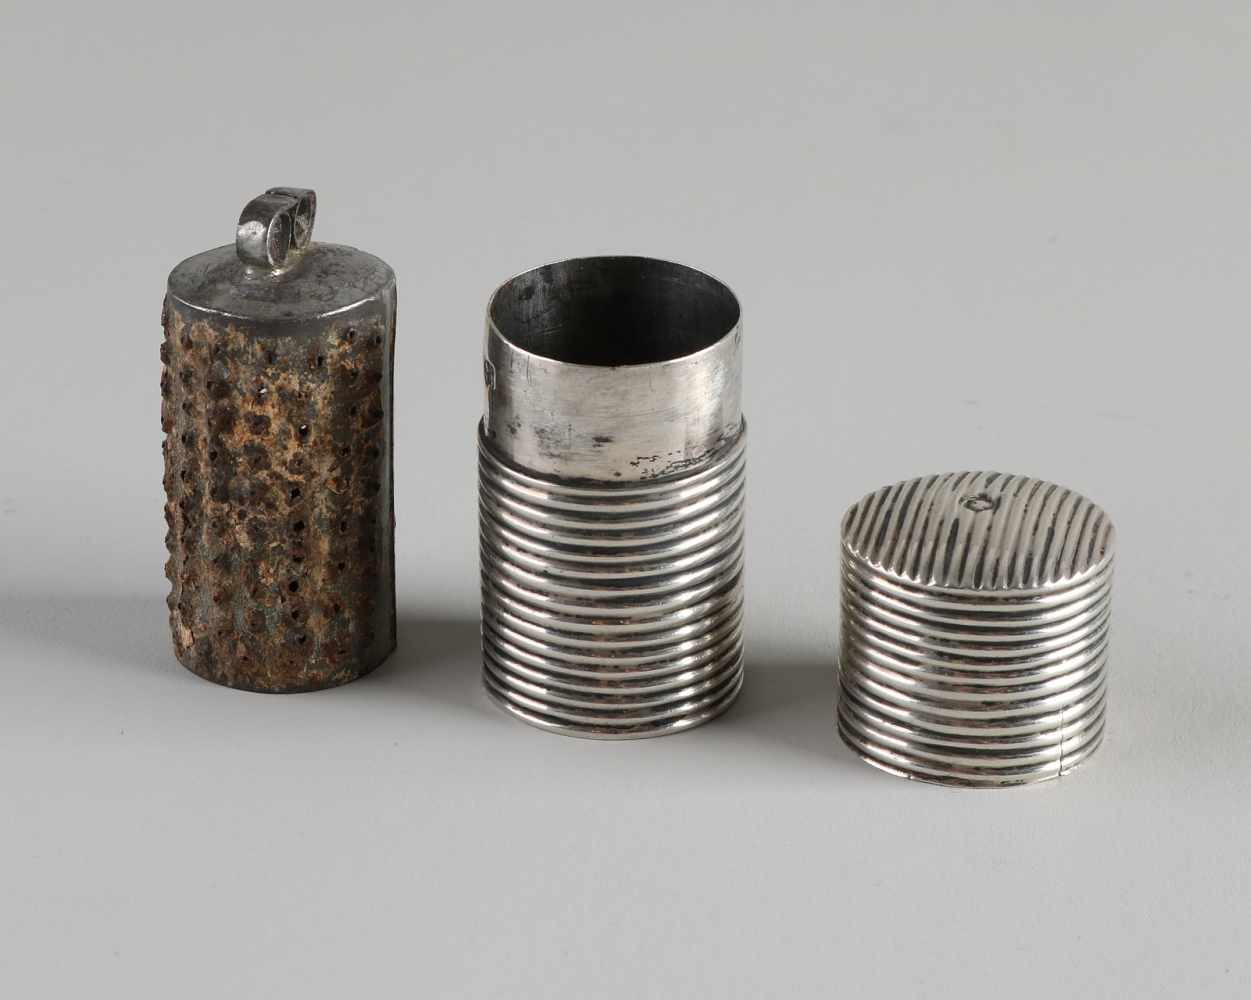 Früher Silberhalter, 833/000, mit Muskatreibe, zylindrischer Halter mit Rippendekor, gefüllt mit